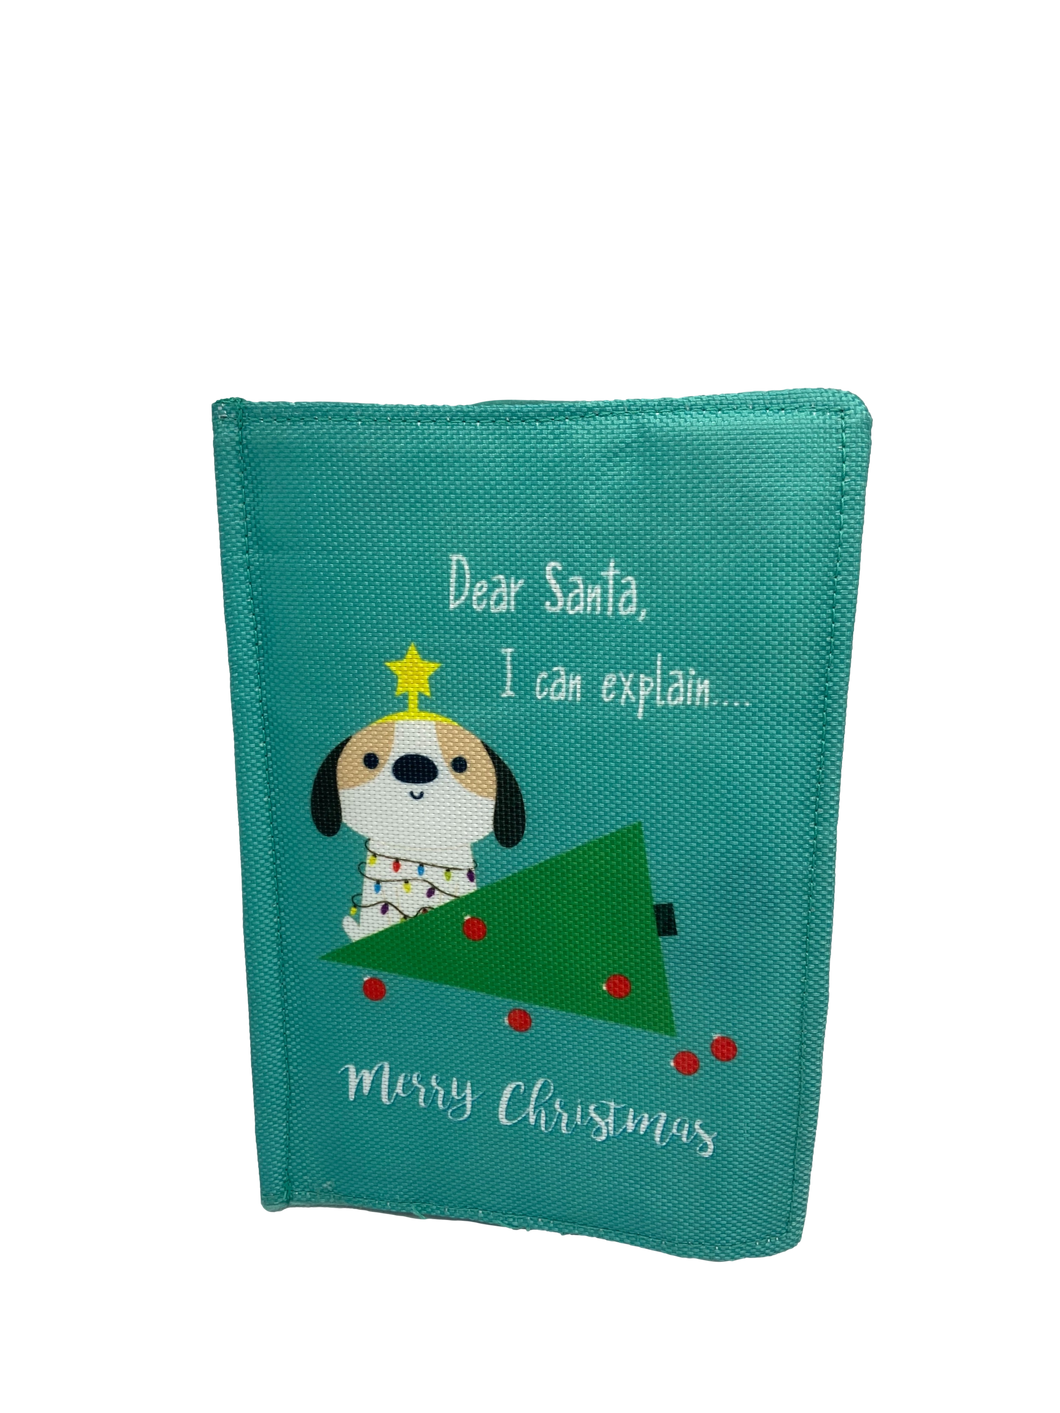 BusterBox Dear Santa Christmas Card